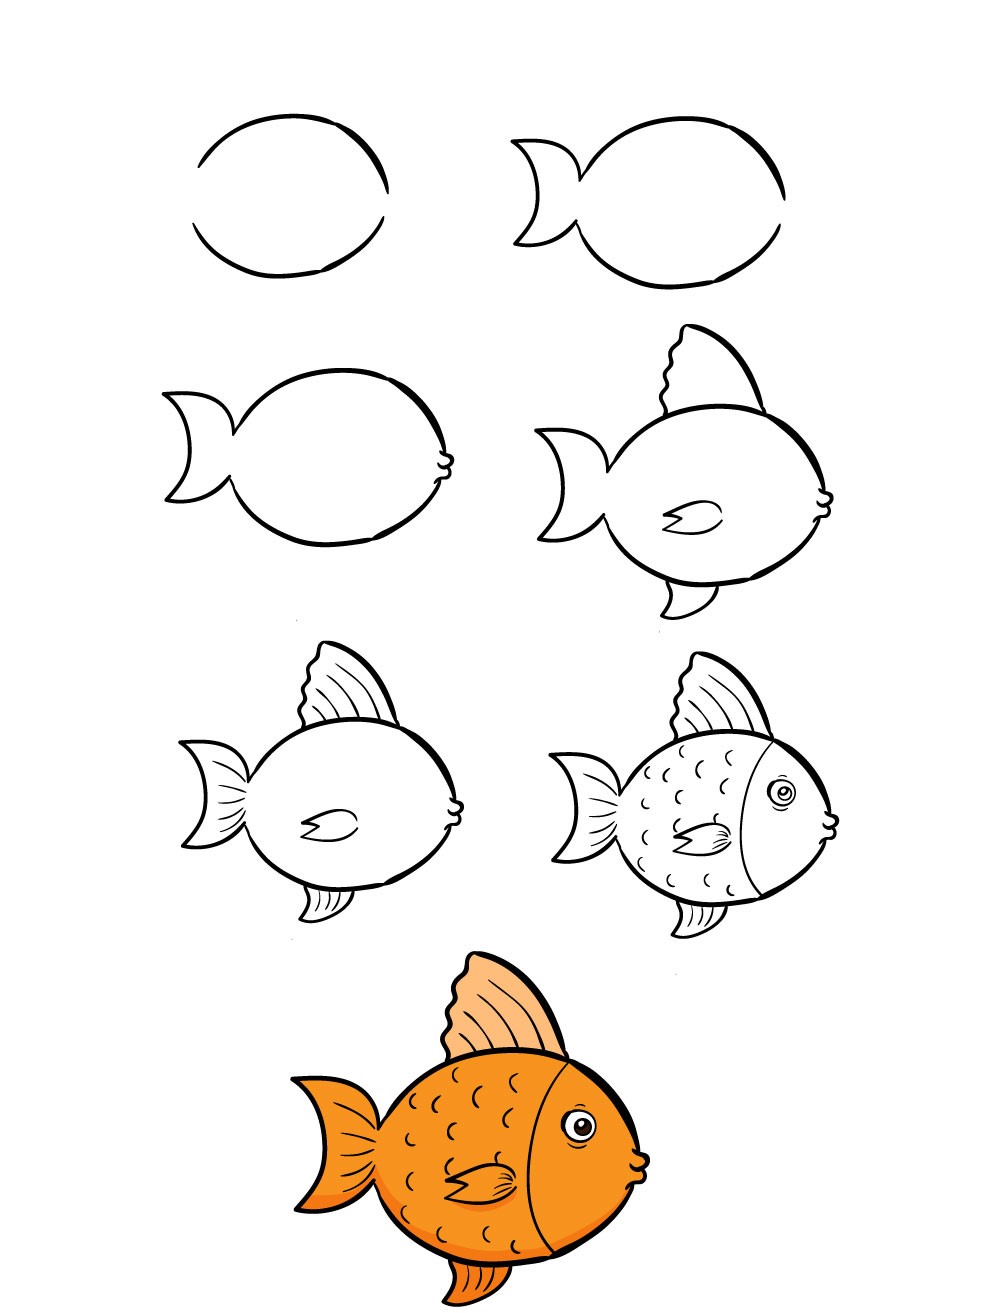 Bạn có muốn vẽ những con cá siêu dễ dàng và đẹp như trong tranh không? Bạn sẽ không phải lo lắng nếu không biết cách vẽ, vì đối với những người mới bắt đầu, chỉ cần một chút hướng dẫn là đủ để vẽ được những con cá tuyệt vời. Xem ảnh để khởi đầu hành trình vẽ cá của bạn nhé!